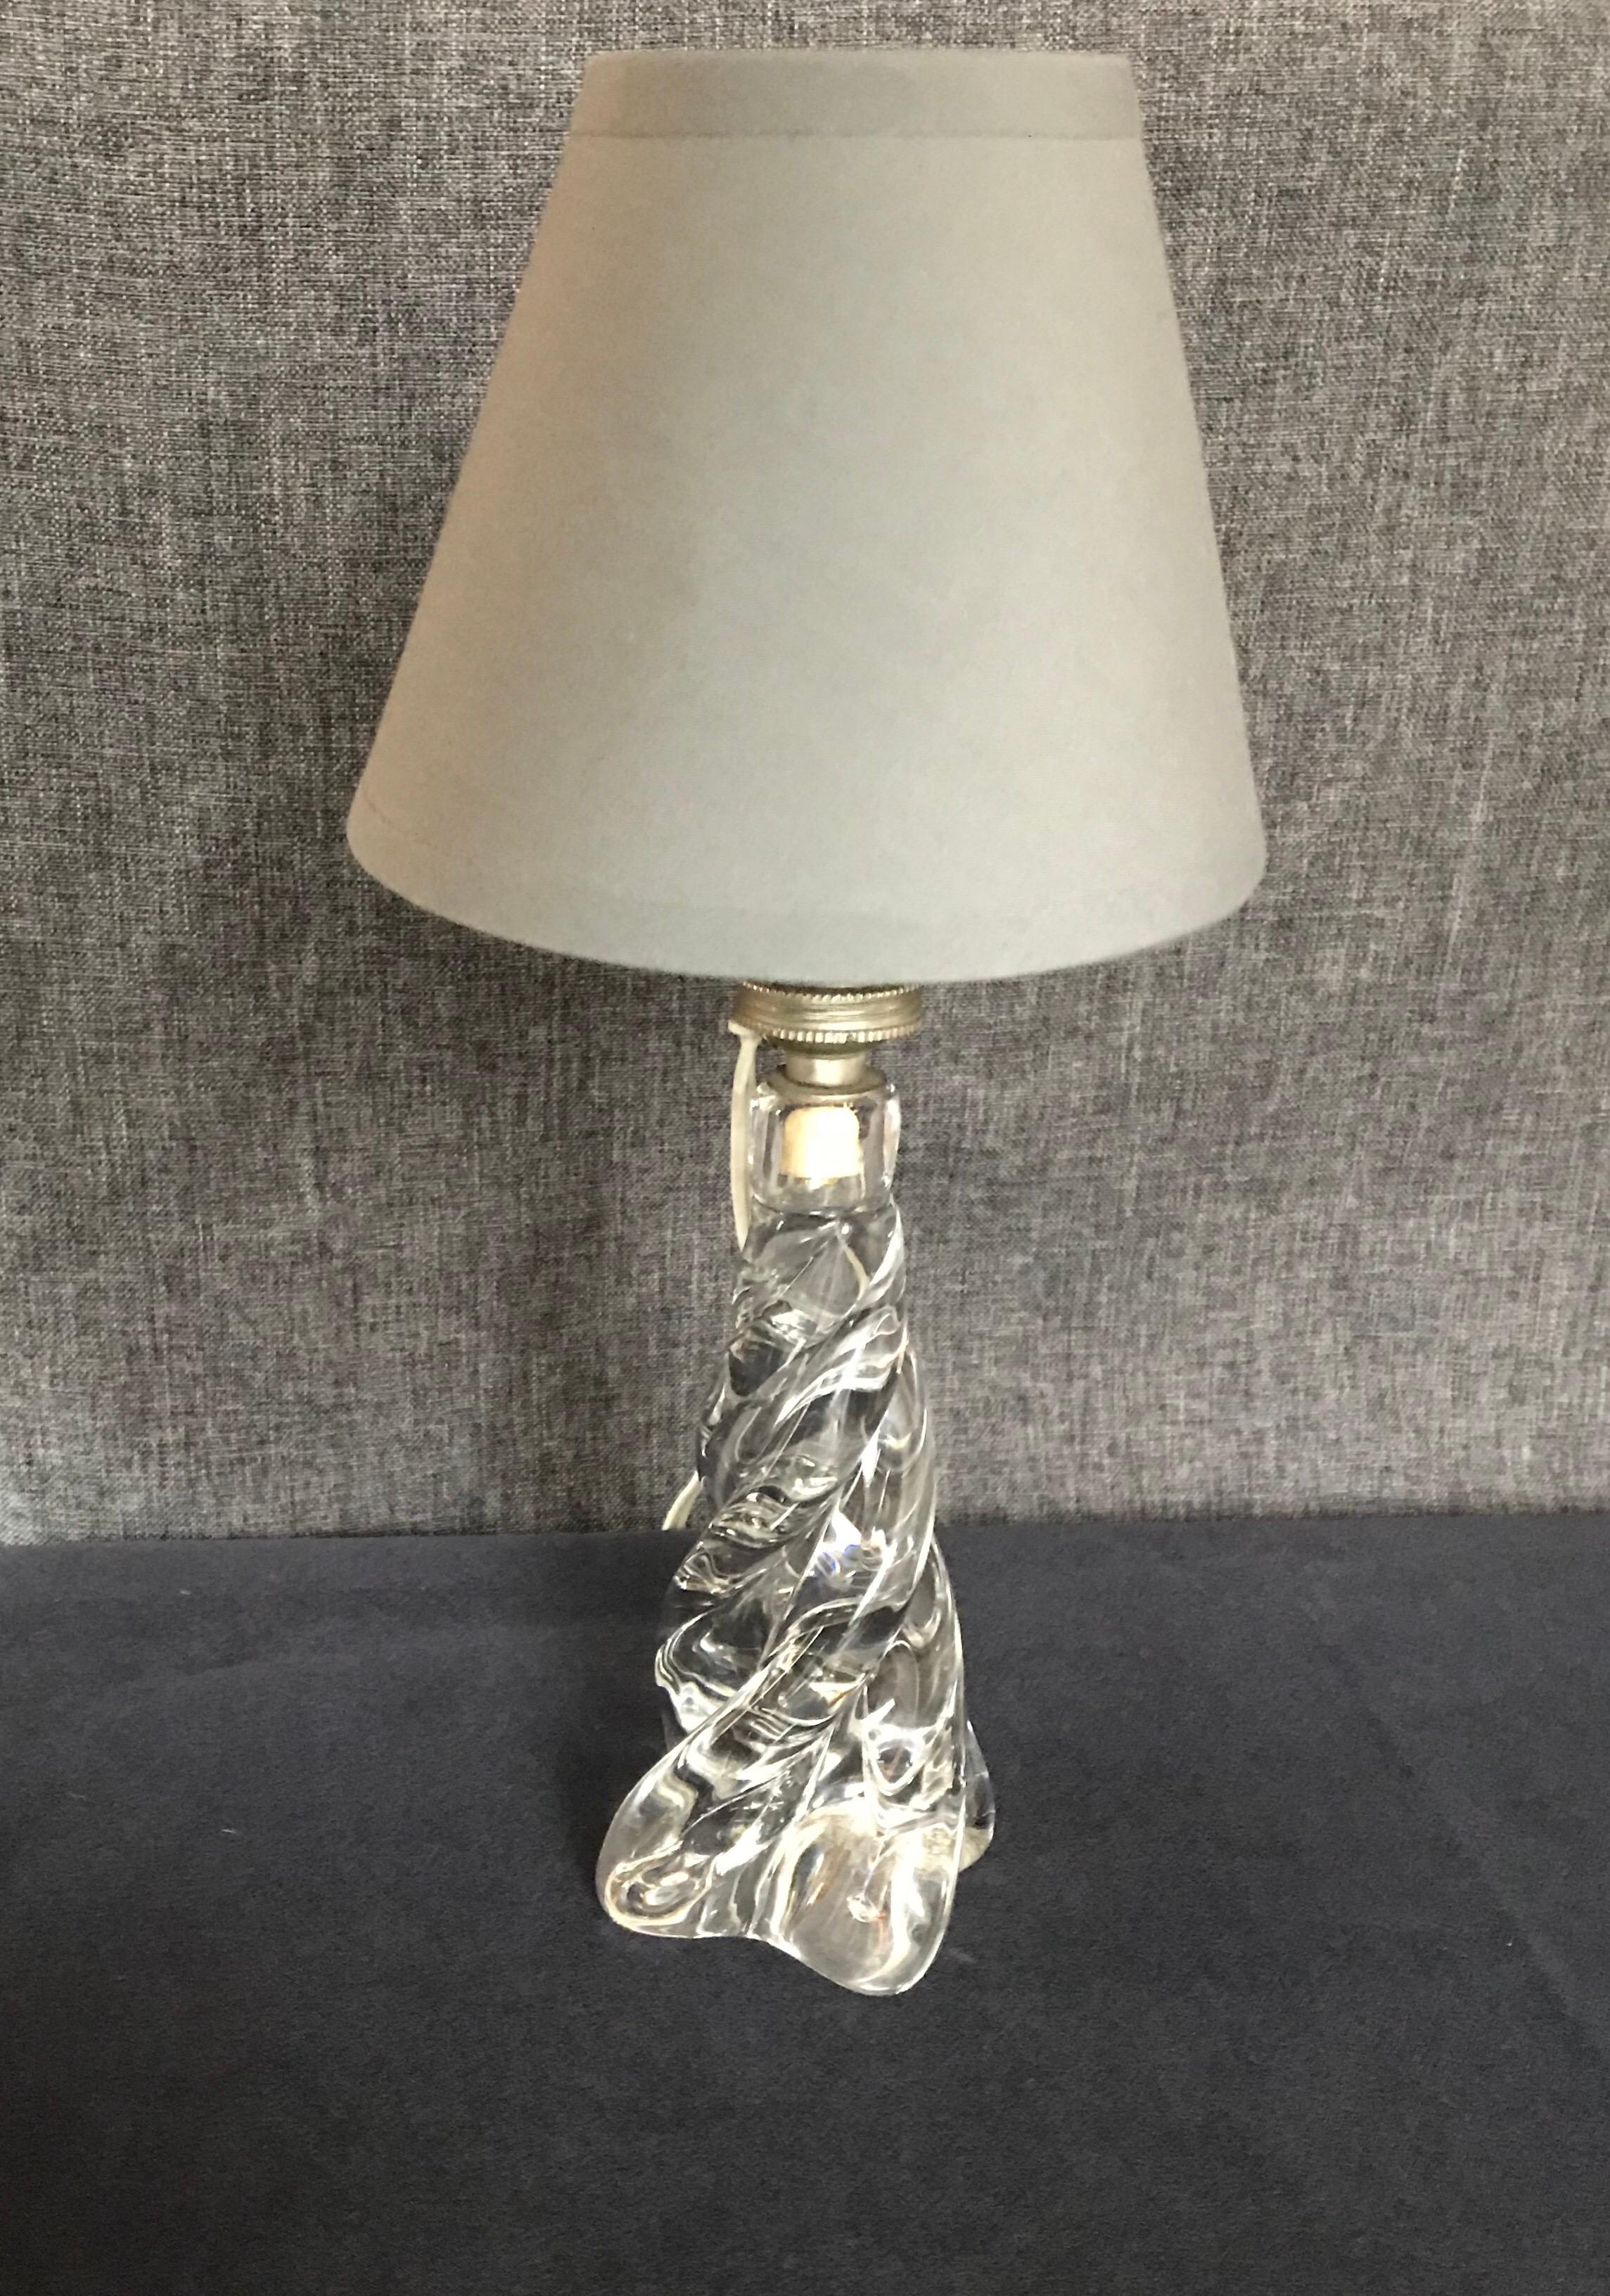 Schöne Kristall-Tischlampe mit grauem Baumwoll-Lampenschirm.
Maße: T 14 x H 30,5 cm
Ohne den Lampenschirm D 8 x H 20 cm
Lampenschirm D 14 x H 10,5 cm.
 